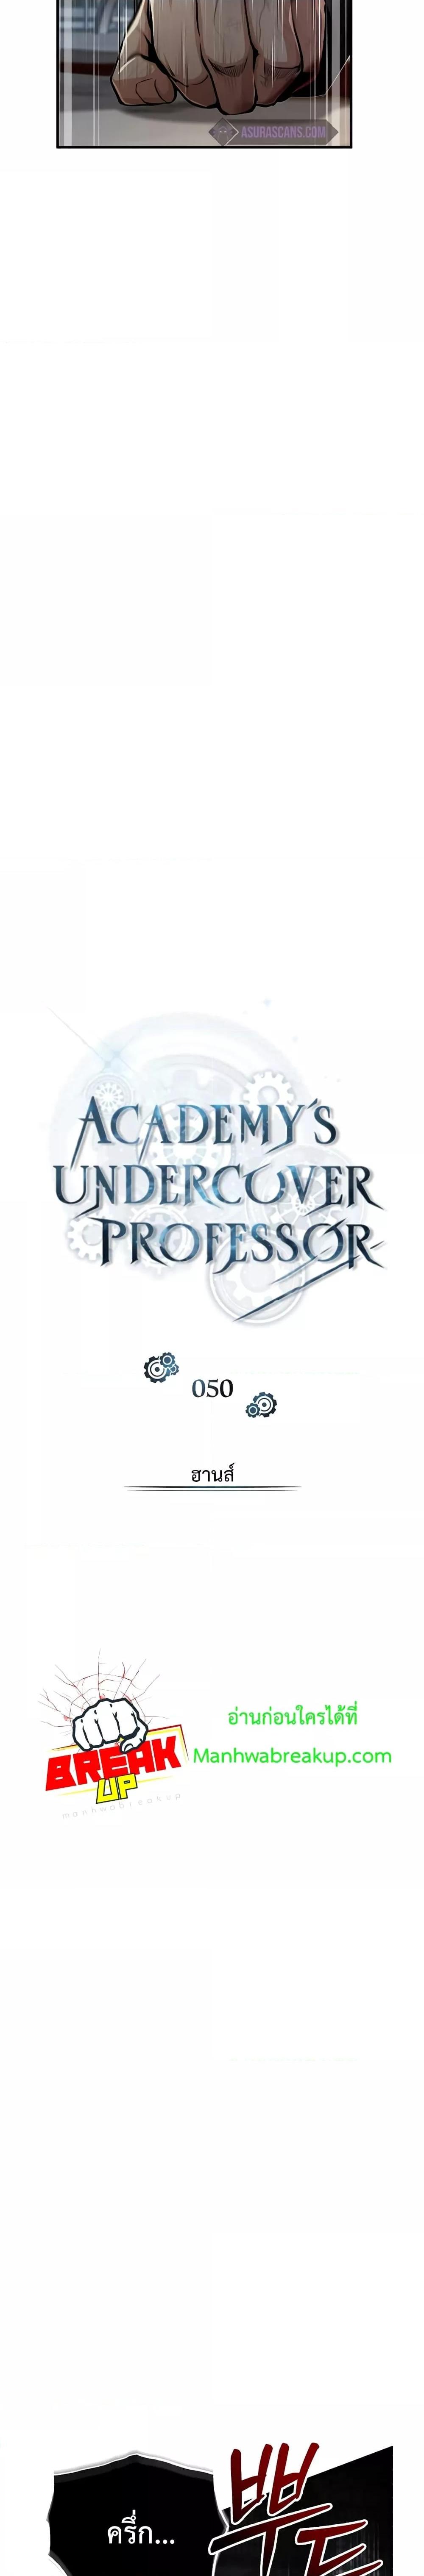 Academy’s Undercover Professor 50 17